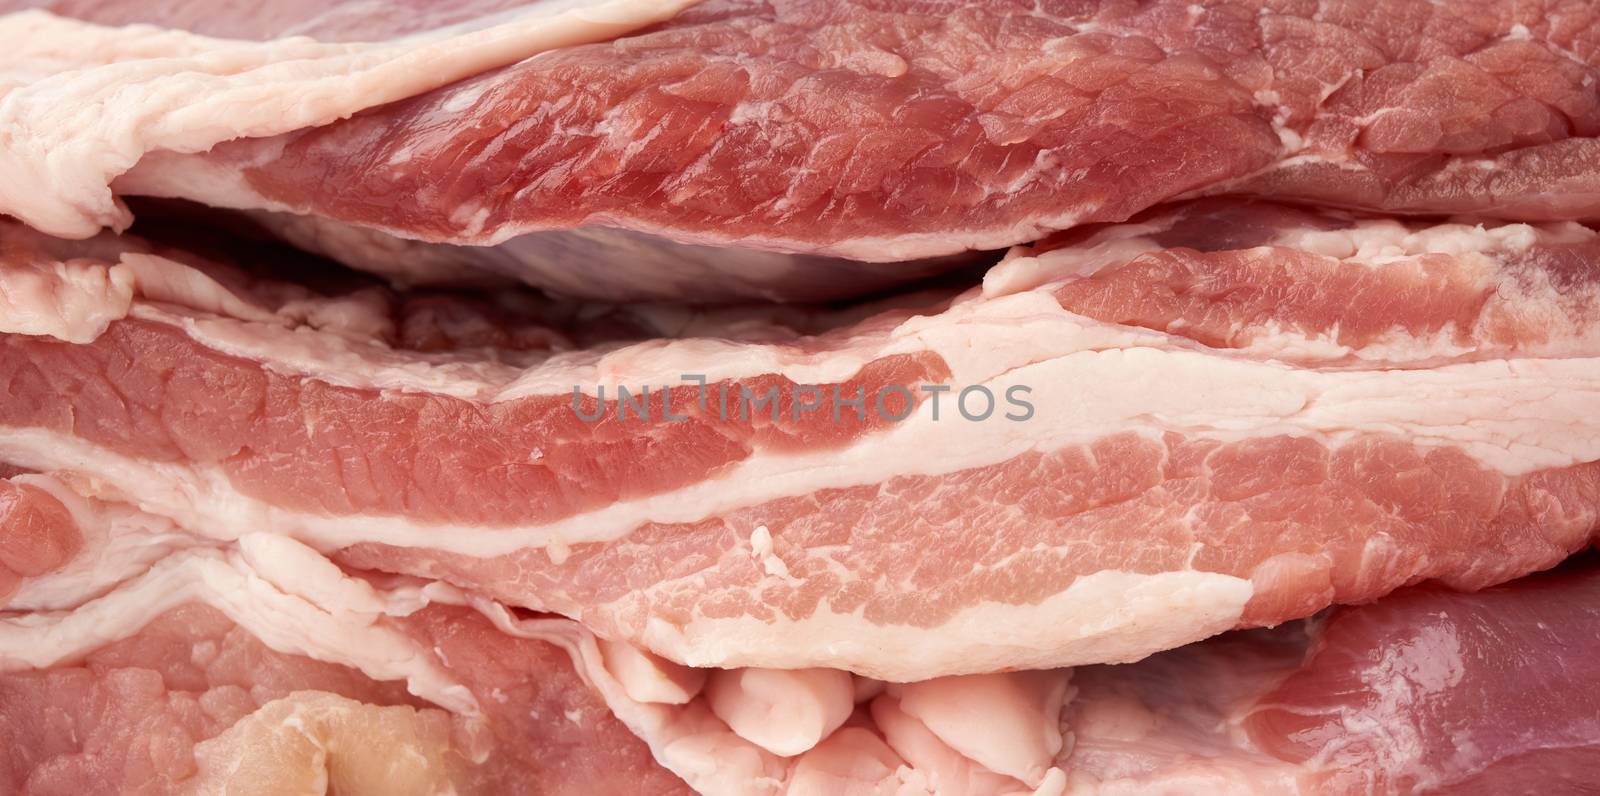 raw pork texture, tenderloin with bacon, bacon by ndanko